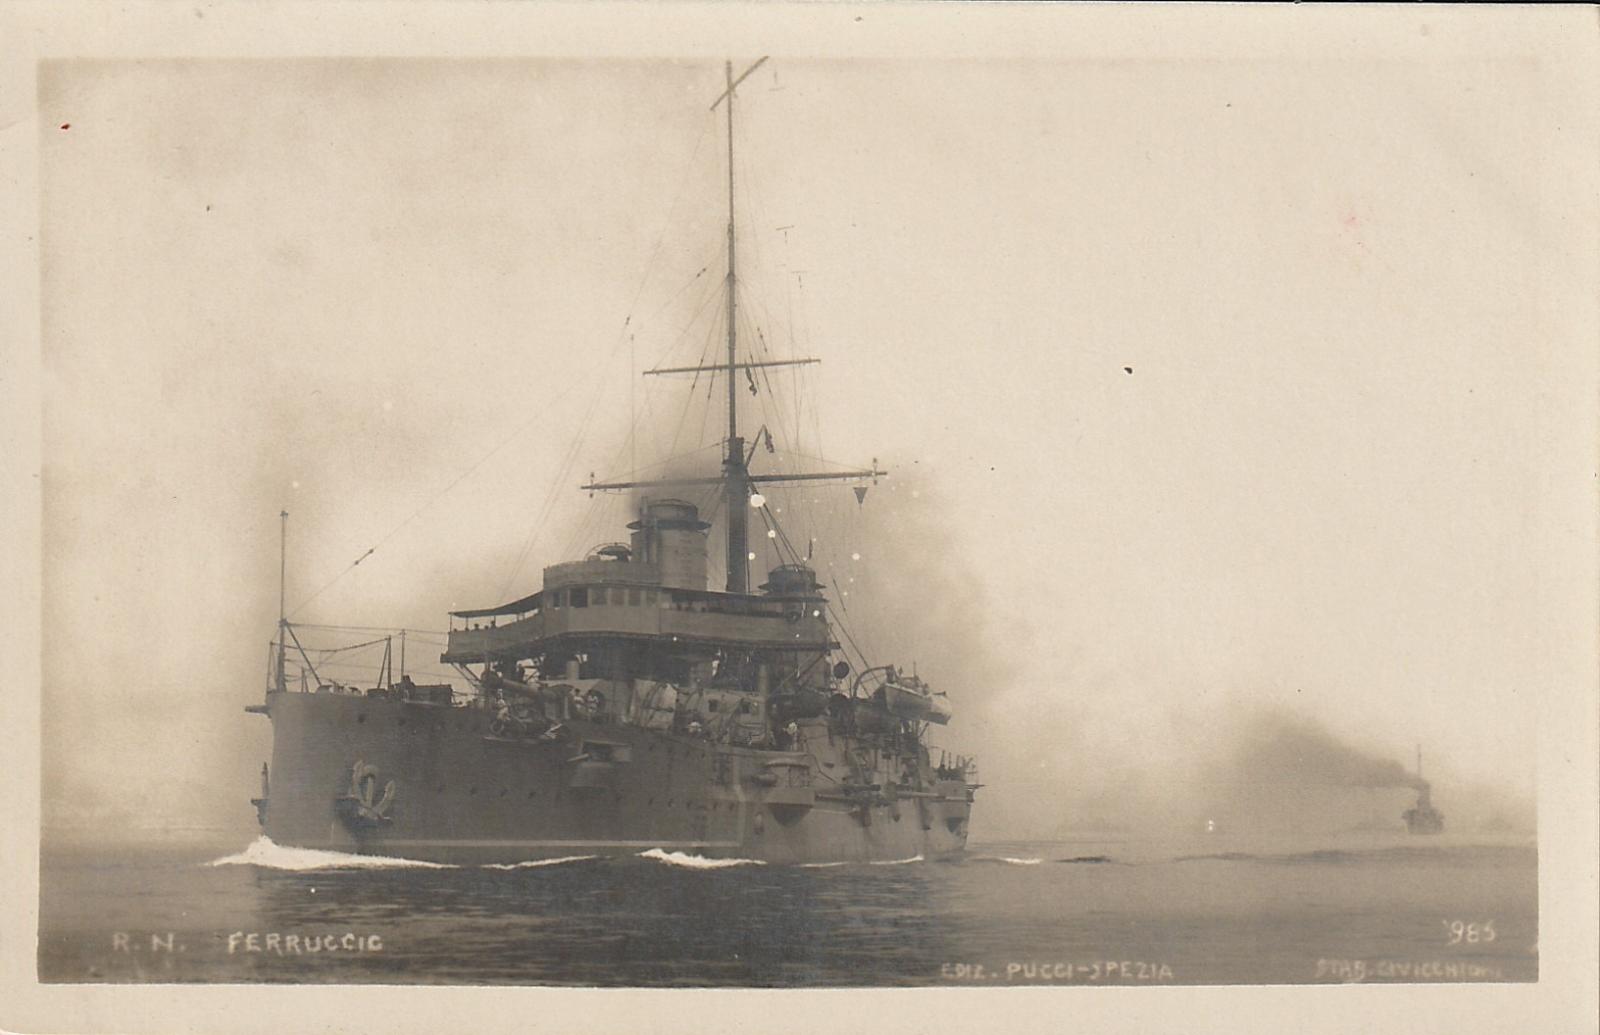 Vojnová loď-R.N. FERRUCIE - Pohľadnice